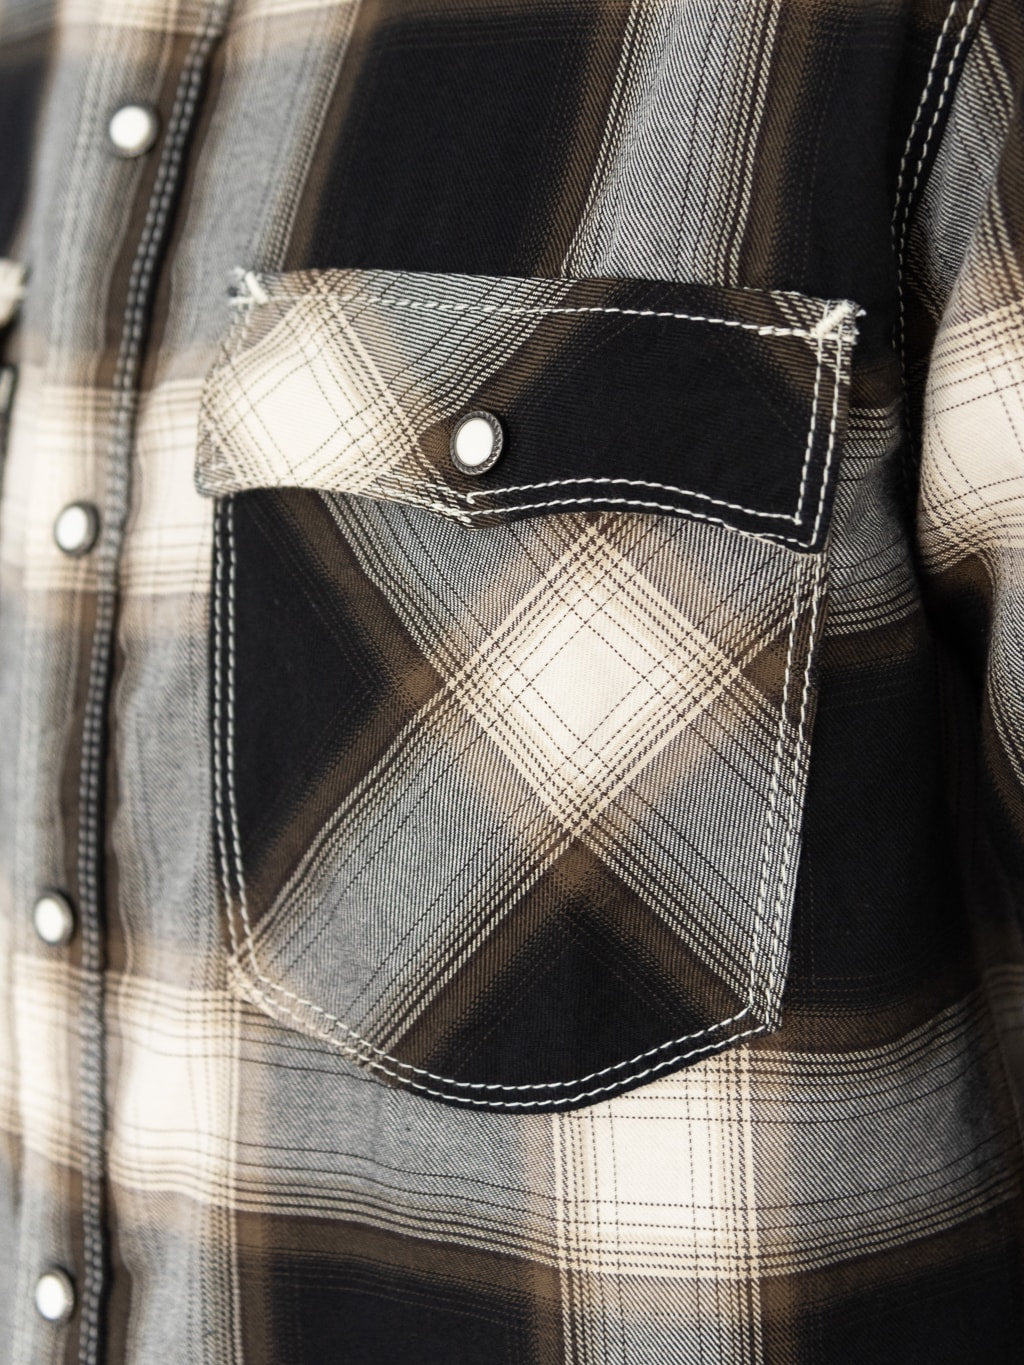 Freenote Cloth Lancaster Black Shadow Plaid Shirt pocket closeup